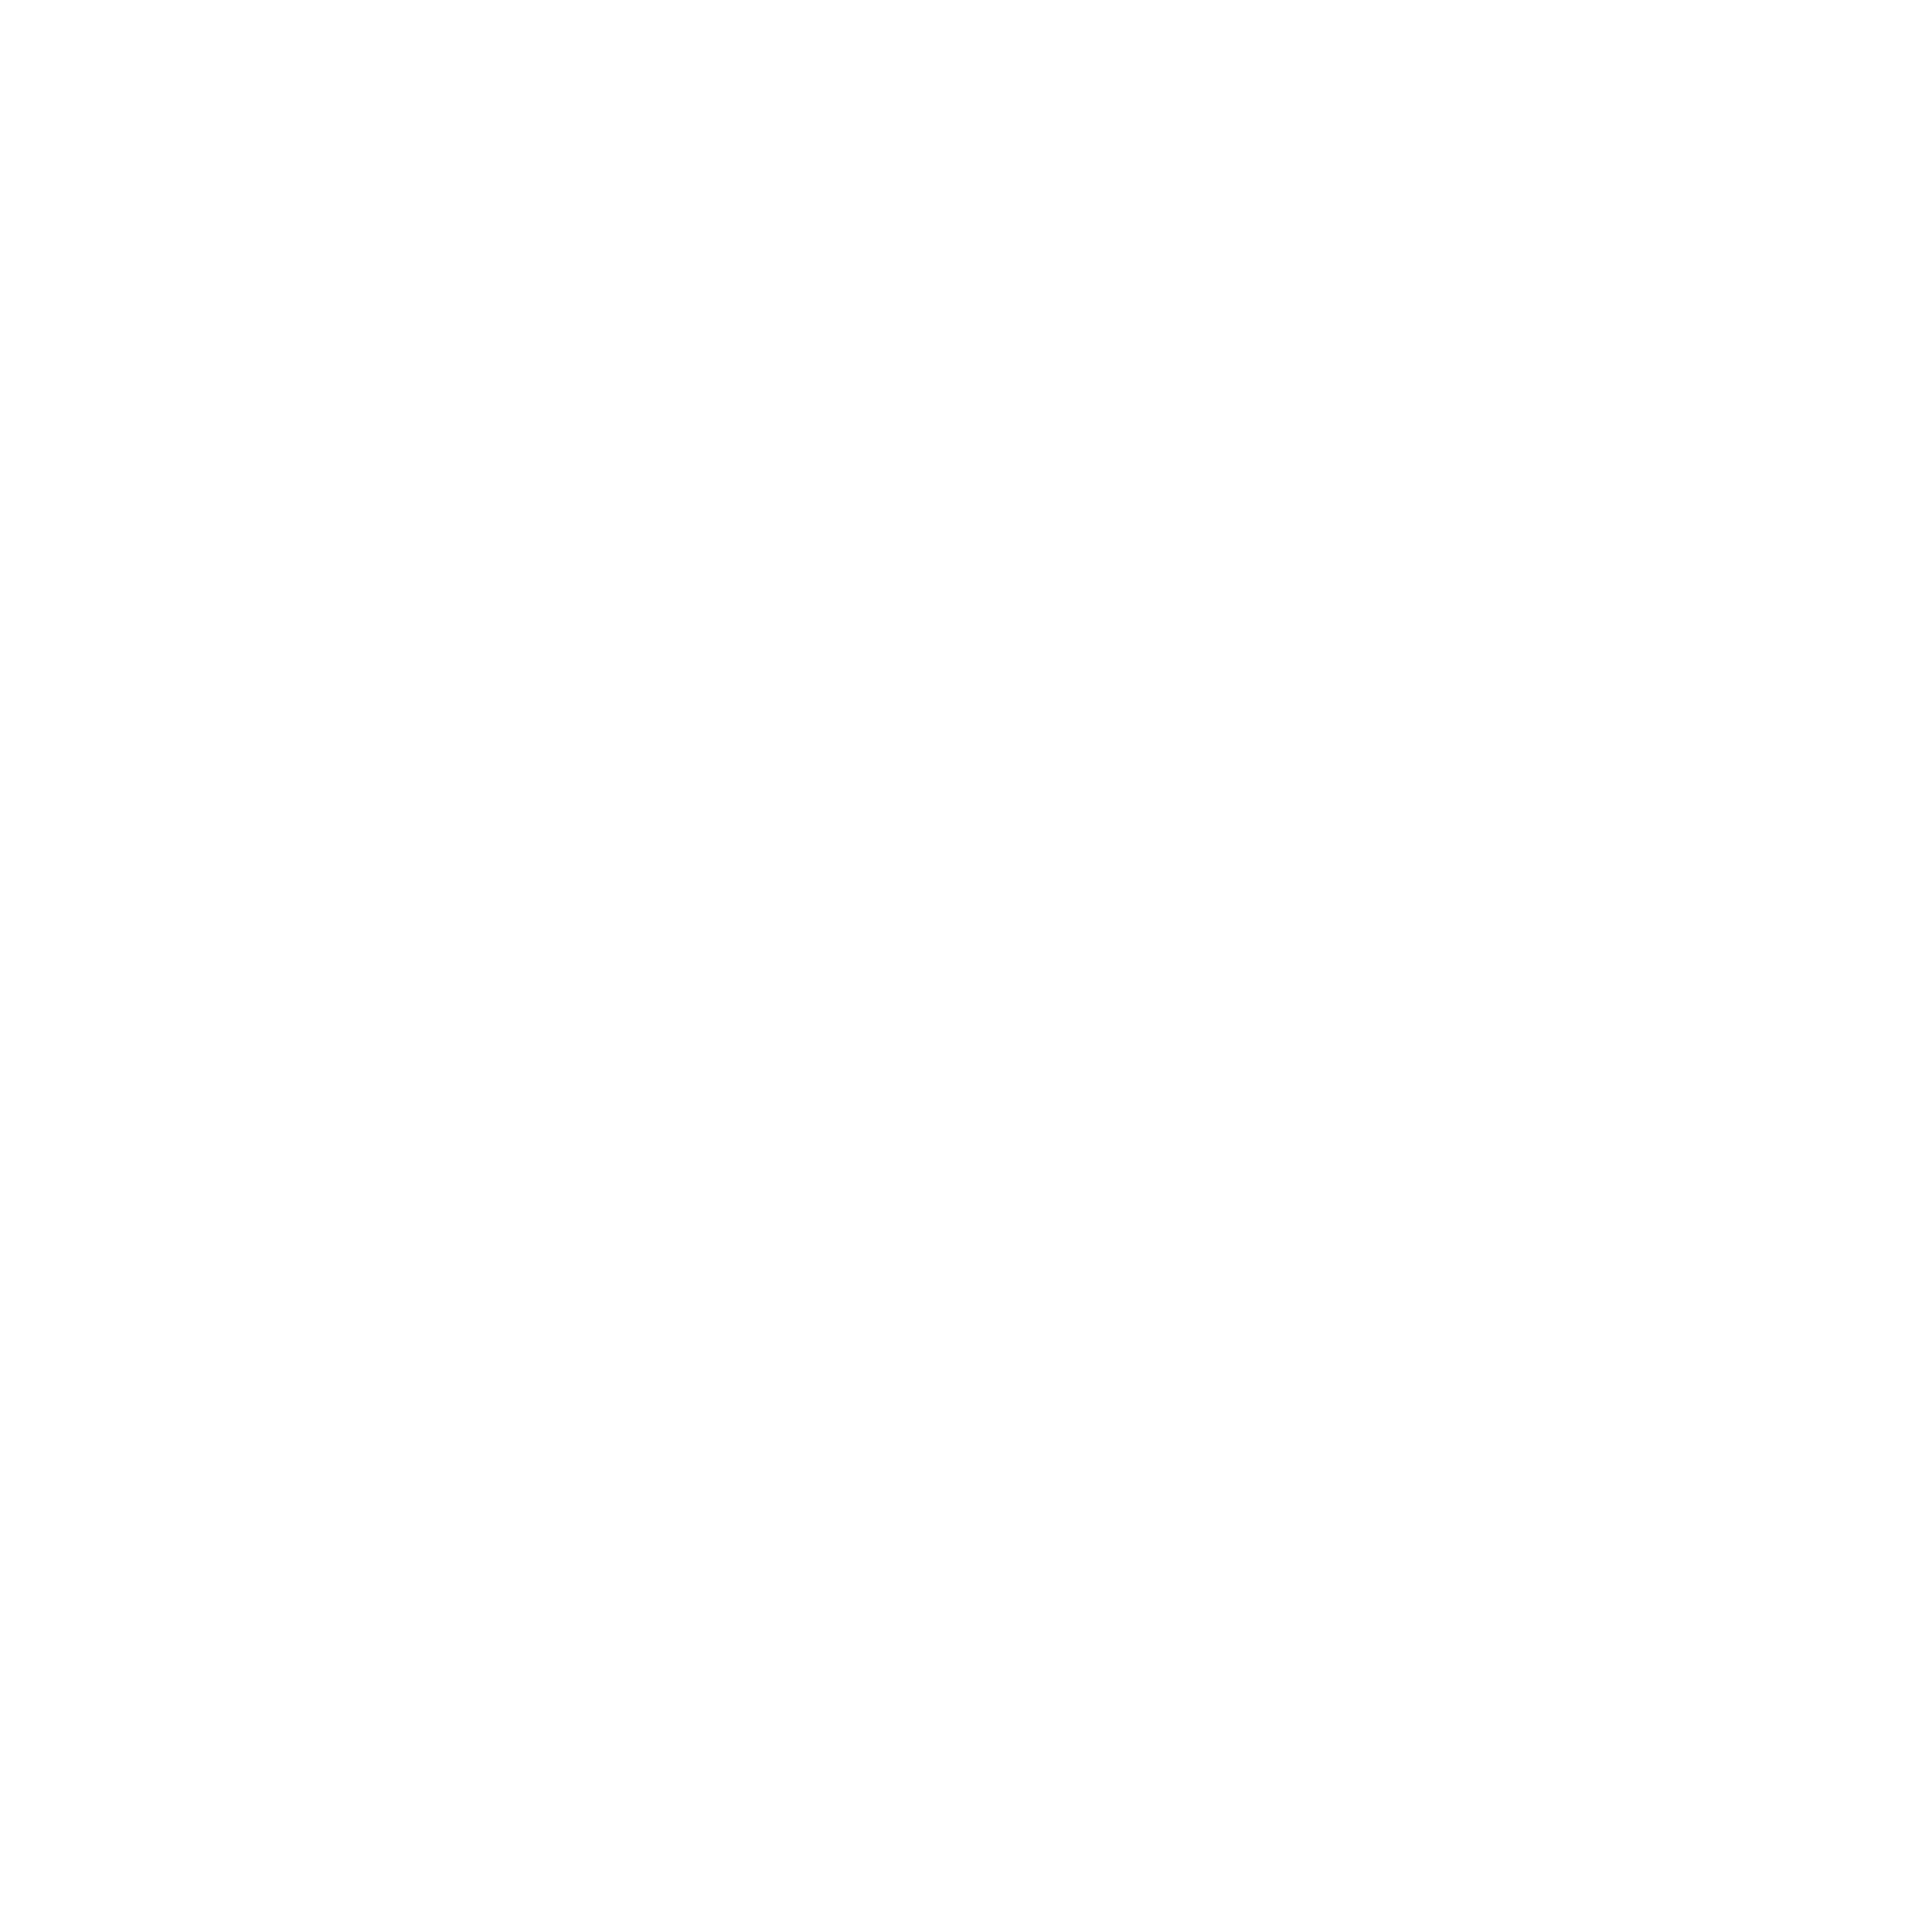 Gregor Schwung